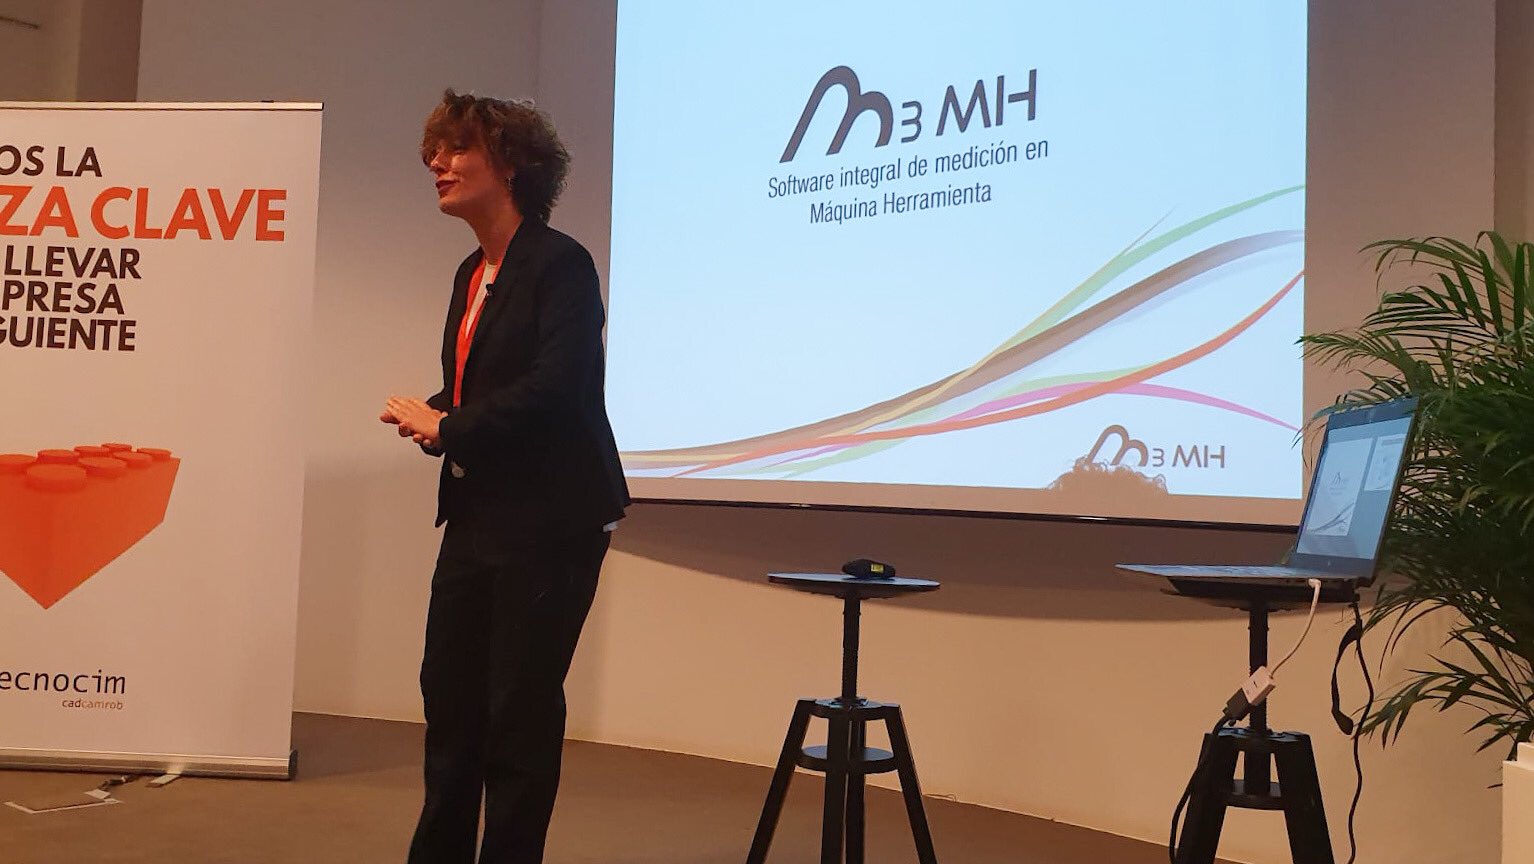 国内4か所で開催されたTecnocim セミナー、Innovalia MetrologyはM3MHソフトウェアを紹介